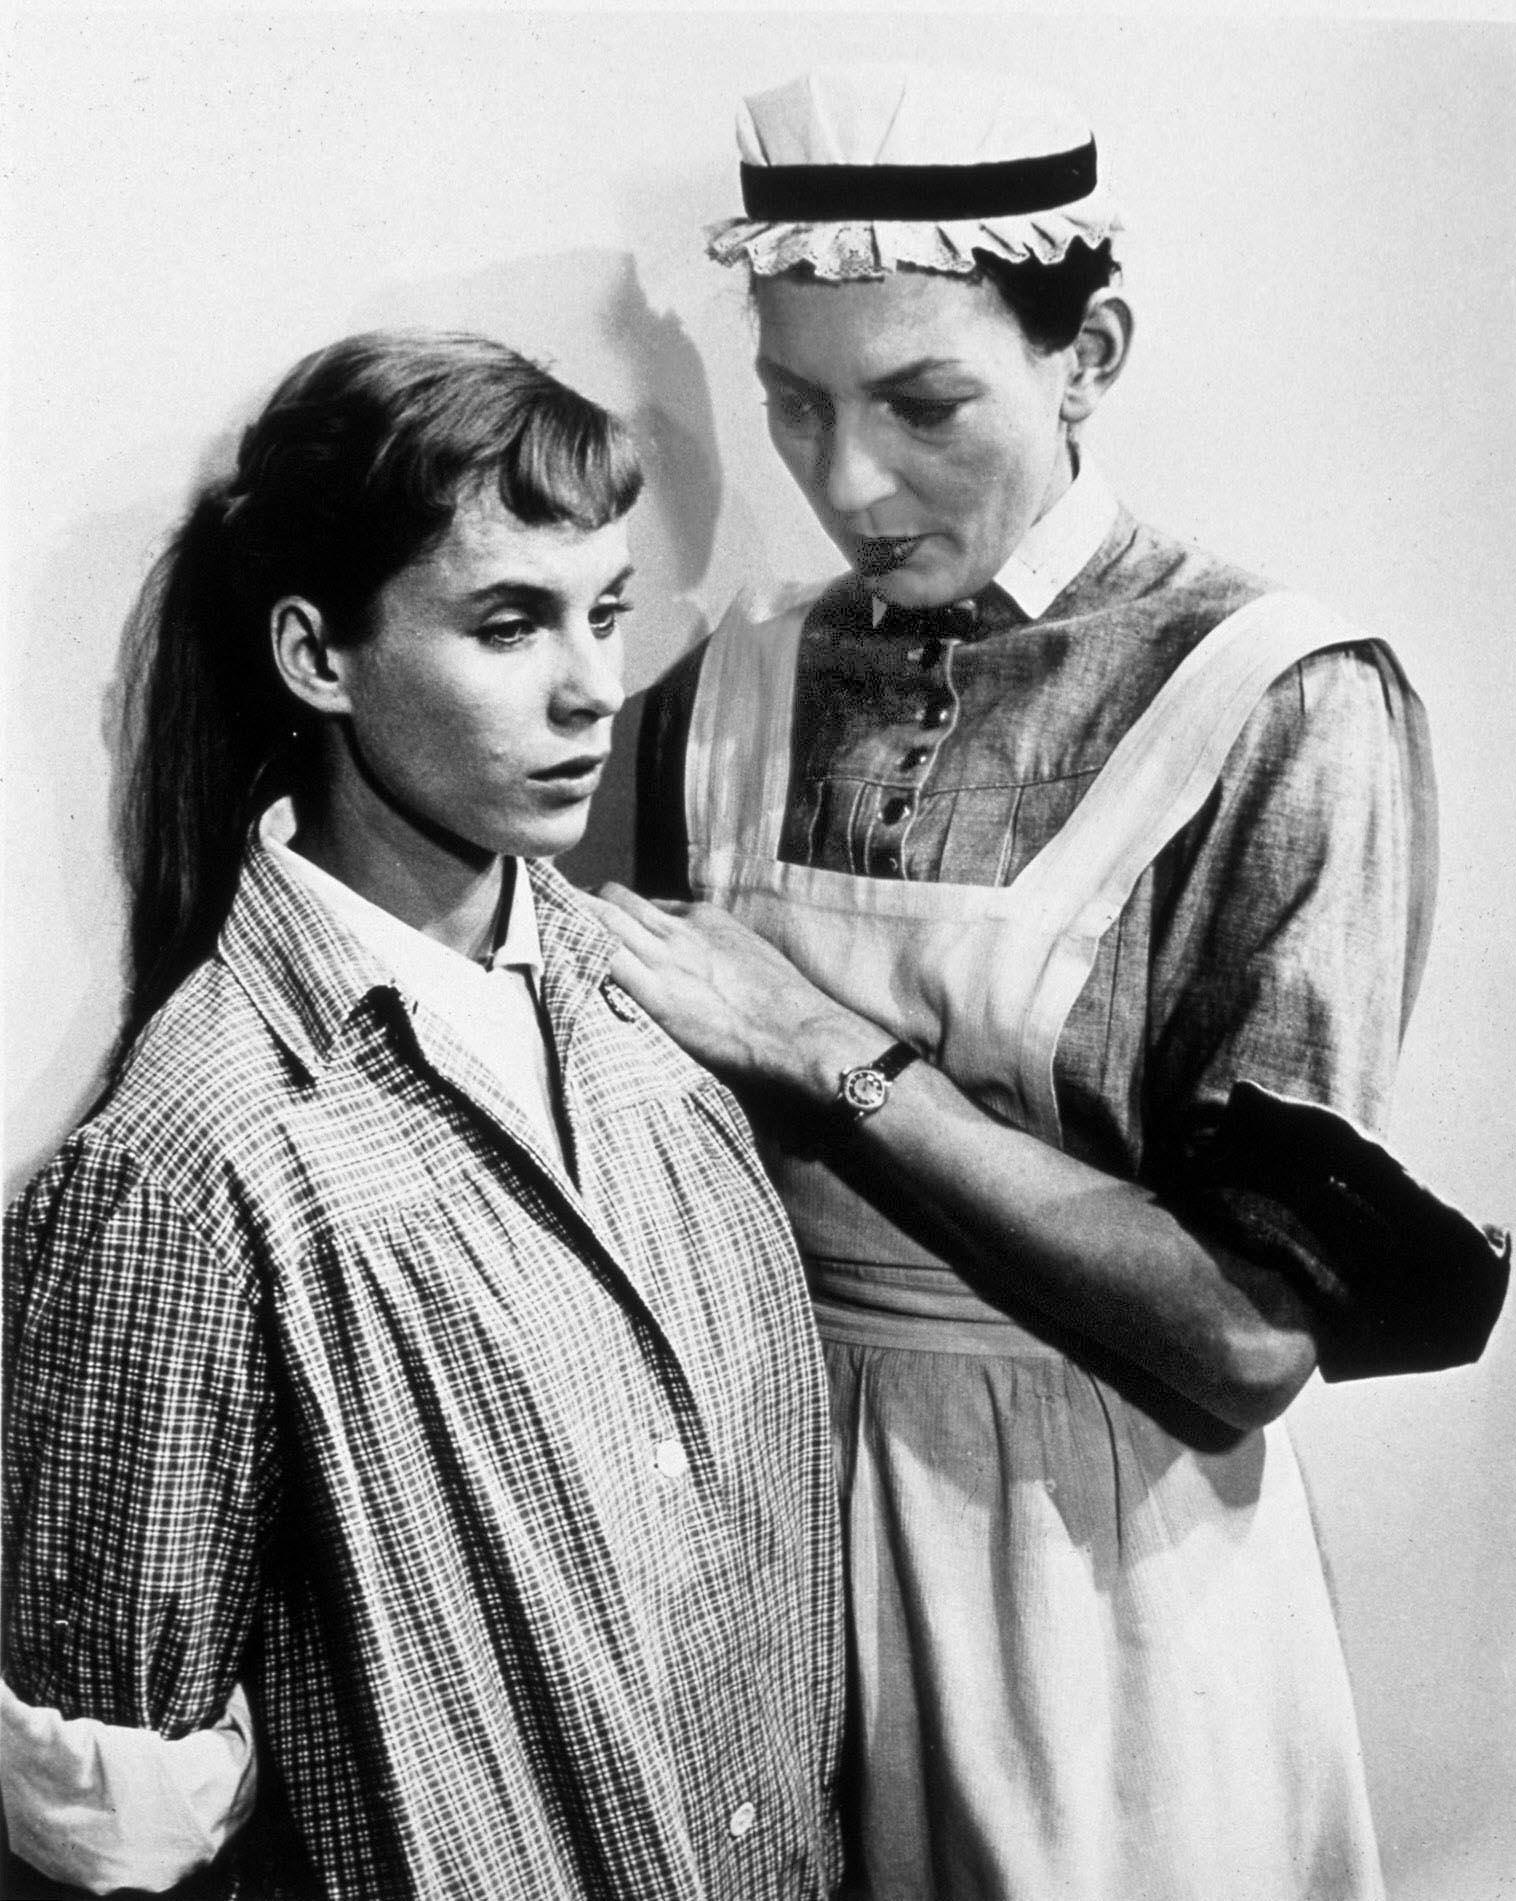 Barbro Hiort af Ornäs i rollen som syster Brita tillsammans med Bibi Andersson i Ingmar Bergmans film "Nära livet" från 1958.